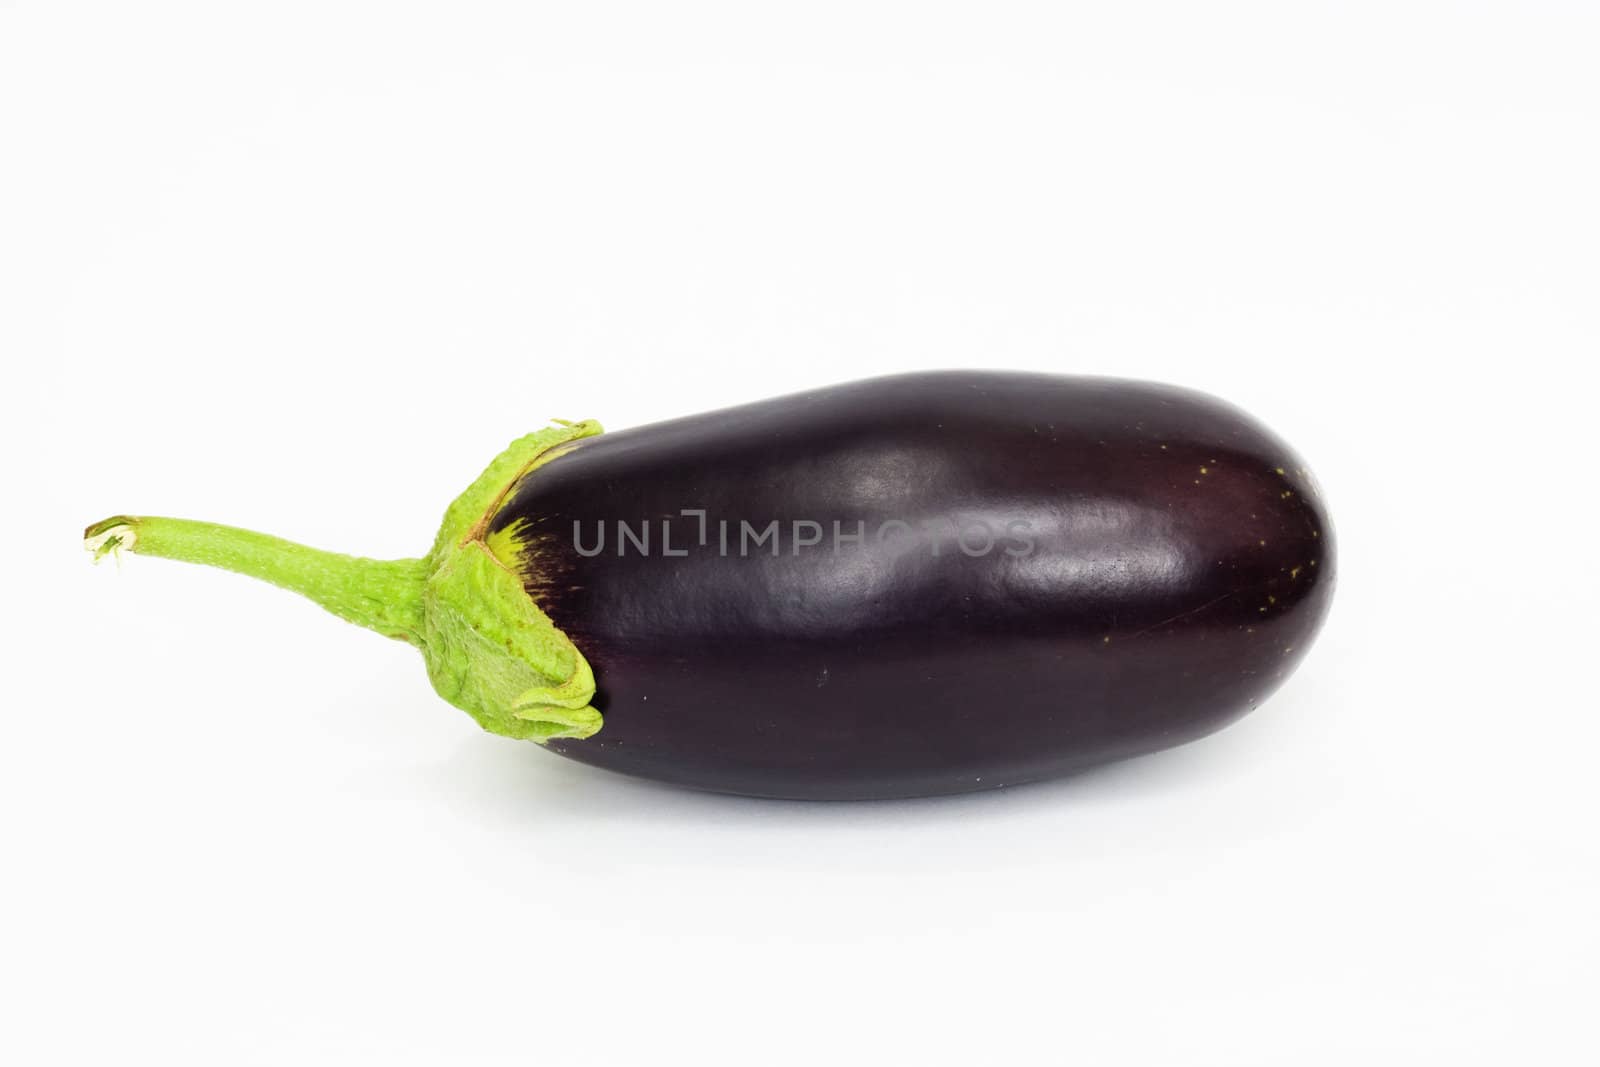 Eggplant on white background 